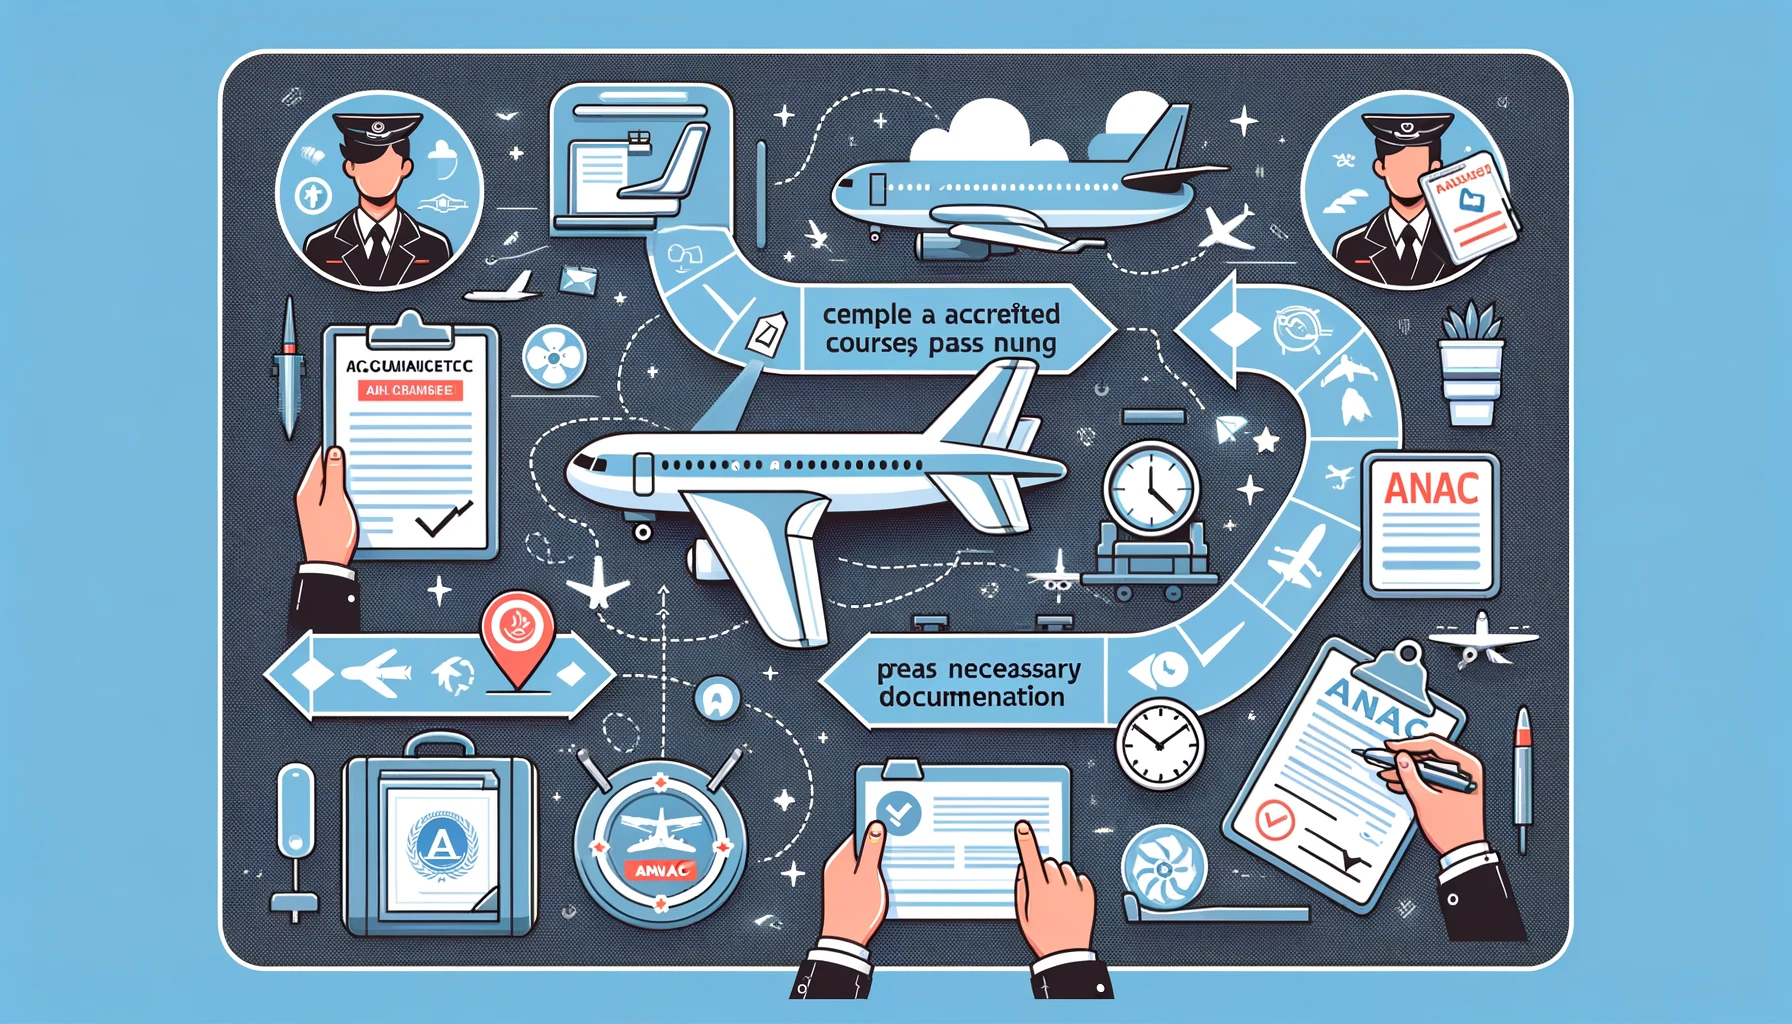 Ilustração mostrando o processo de obtenção da licença de comissário de voo pela ANAC, incluindo a conclusão de curso homologado, aprovação em exame e requisitos de documentação.